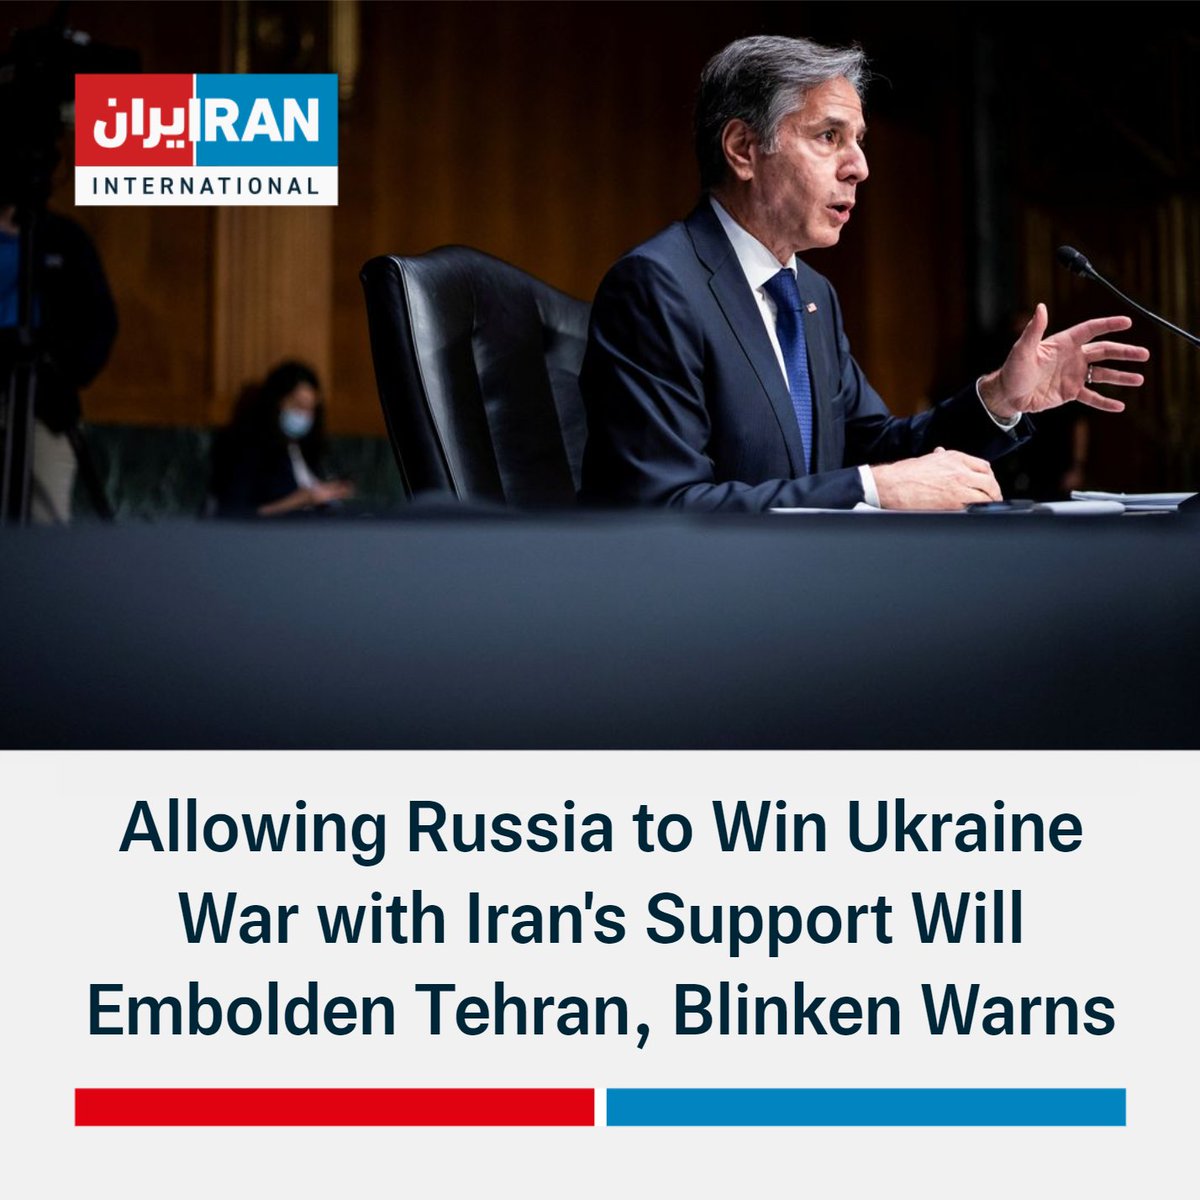 Le secrétaire d'État américain @SecBlinken lors de l'audition au Sénat : Depuis que nous avons coupé les moyens traditionnels d'approvisionnement de l'armée russe, elle se tourne de plus en plus vers l'Iran pour obtenir de l'aide. En échange, Moscou a fourni à l'Iran une technologie militaire de plus en plus avancée.